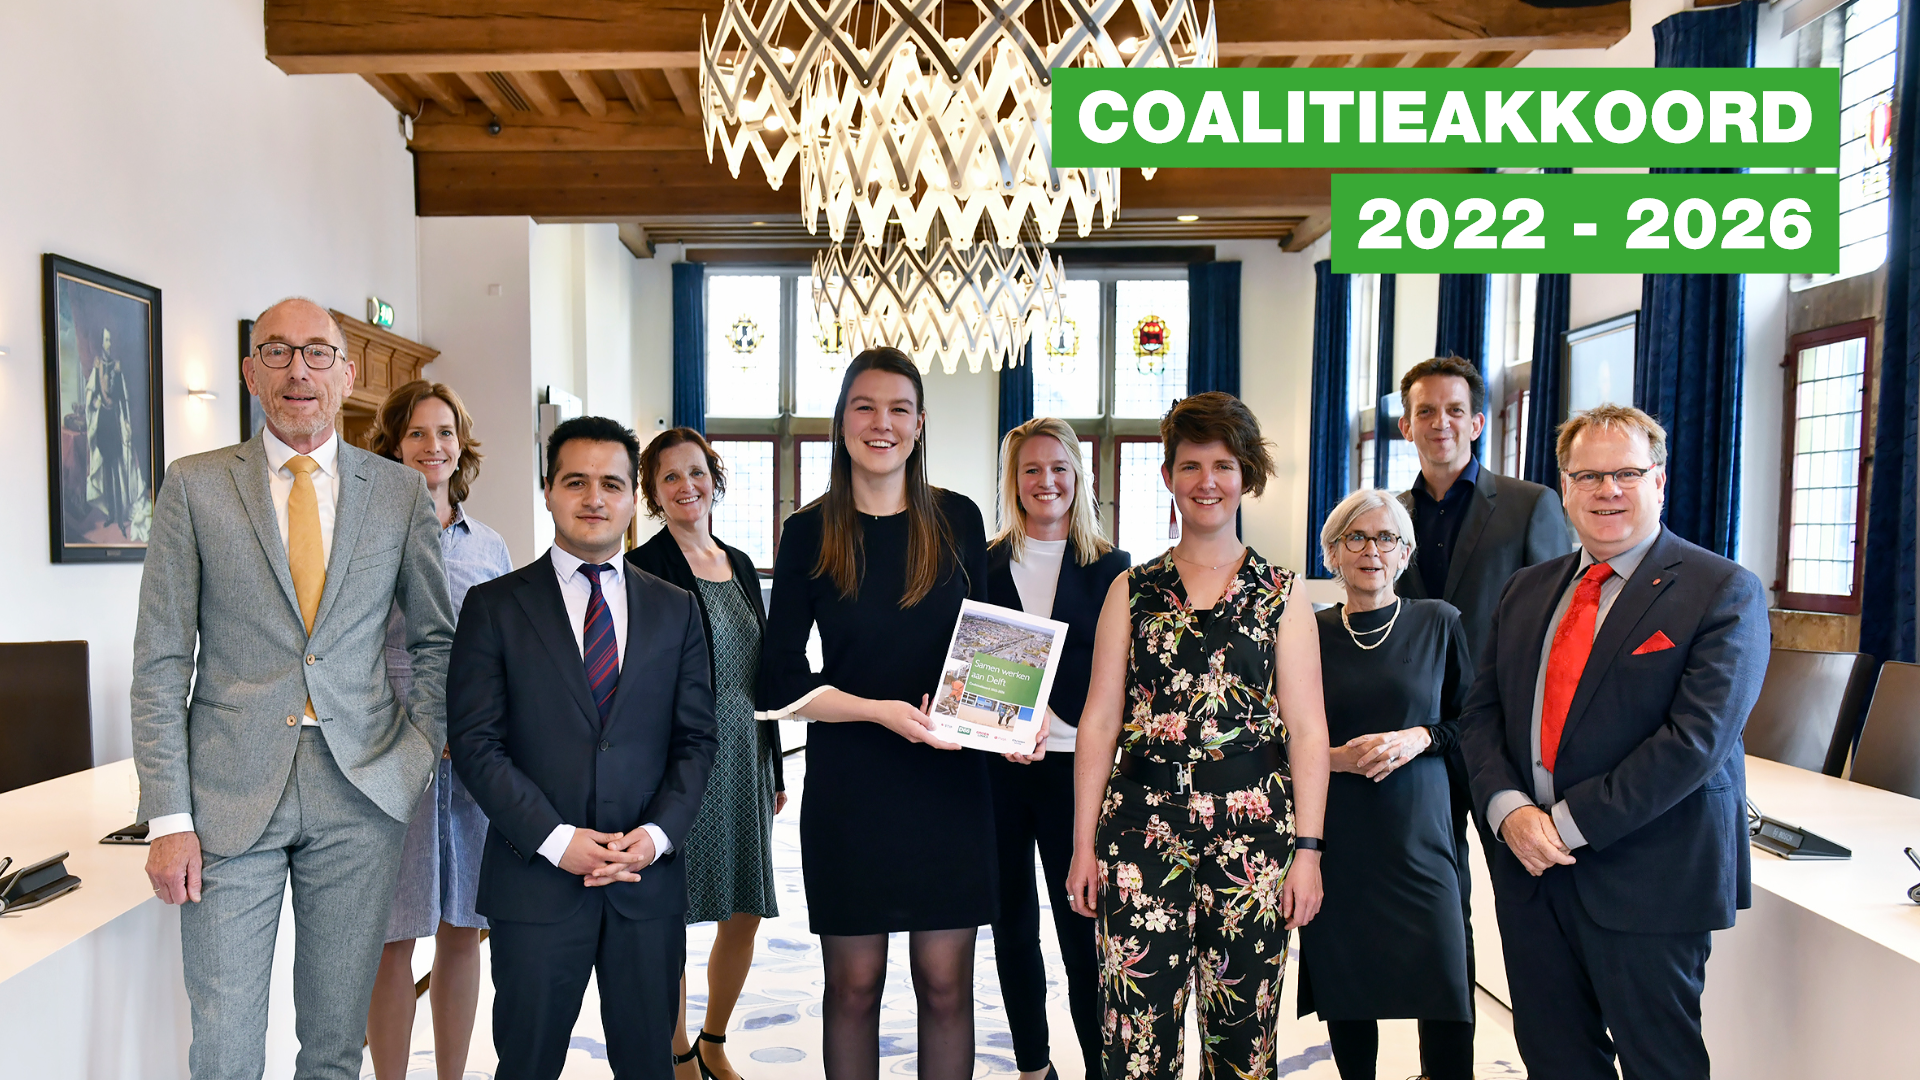 Delft Coalitieakkoord 2022 - 2026